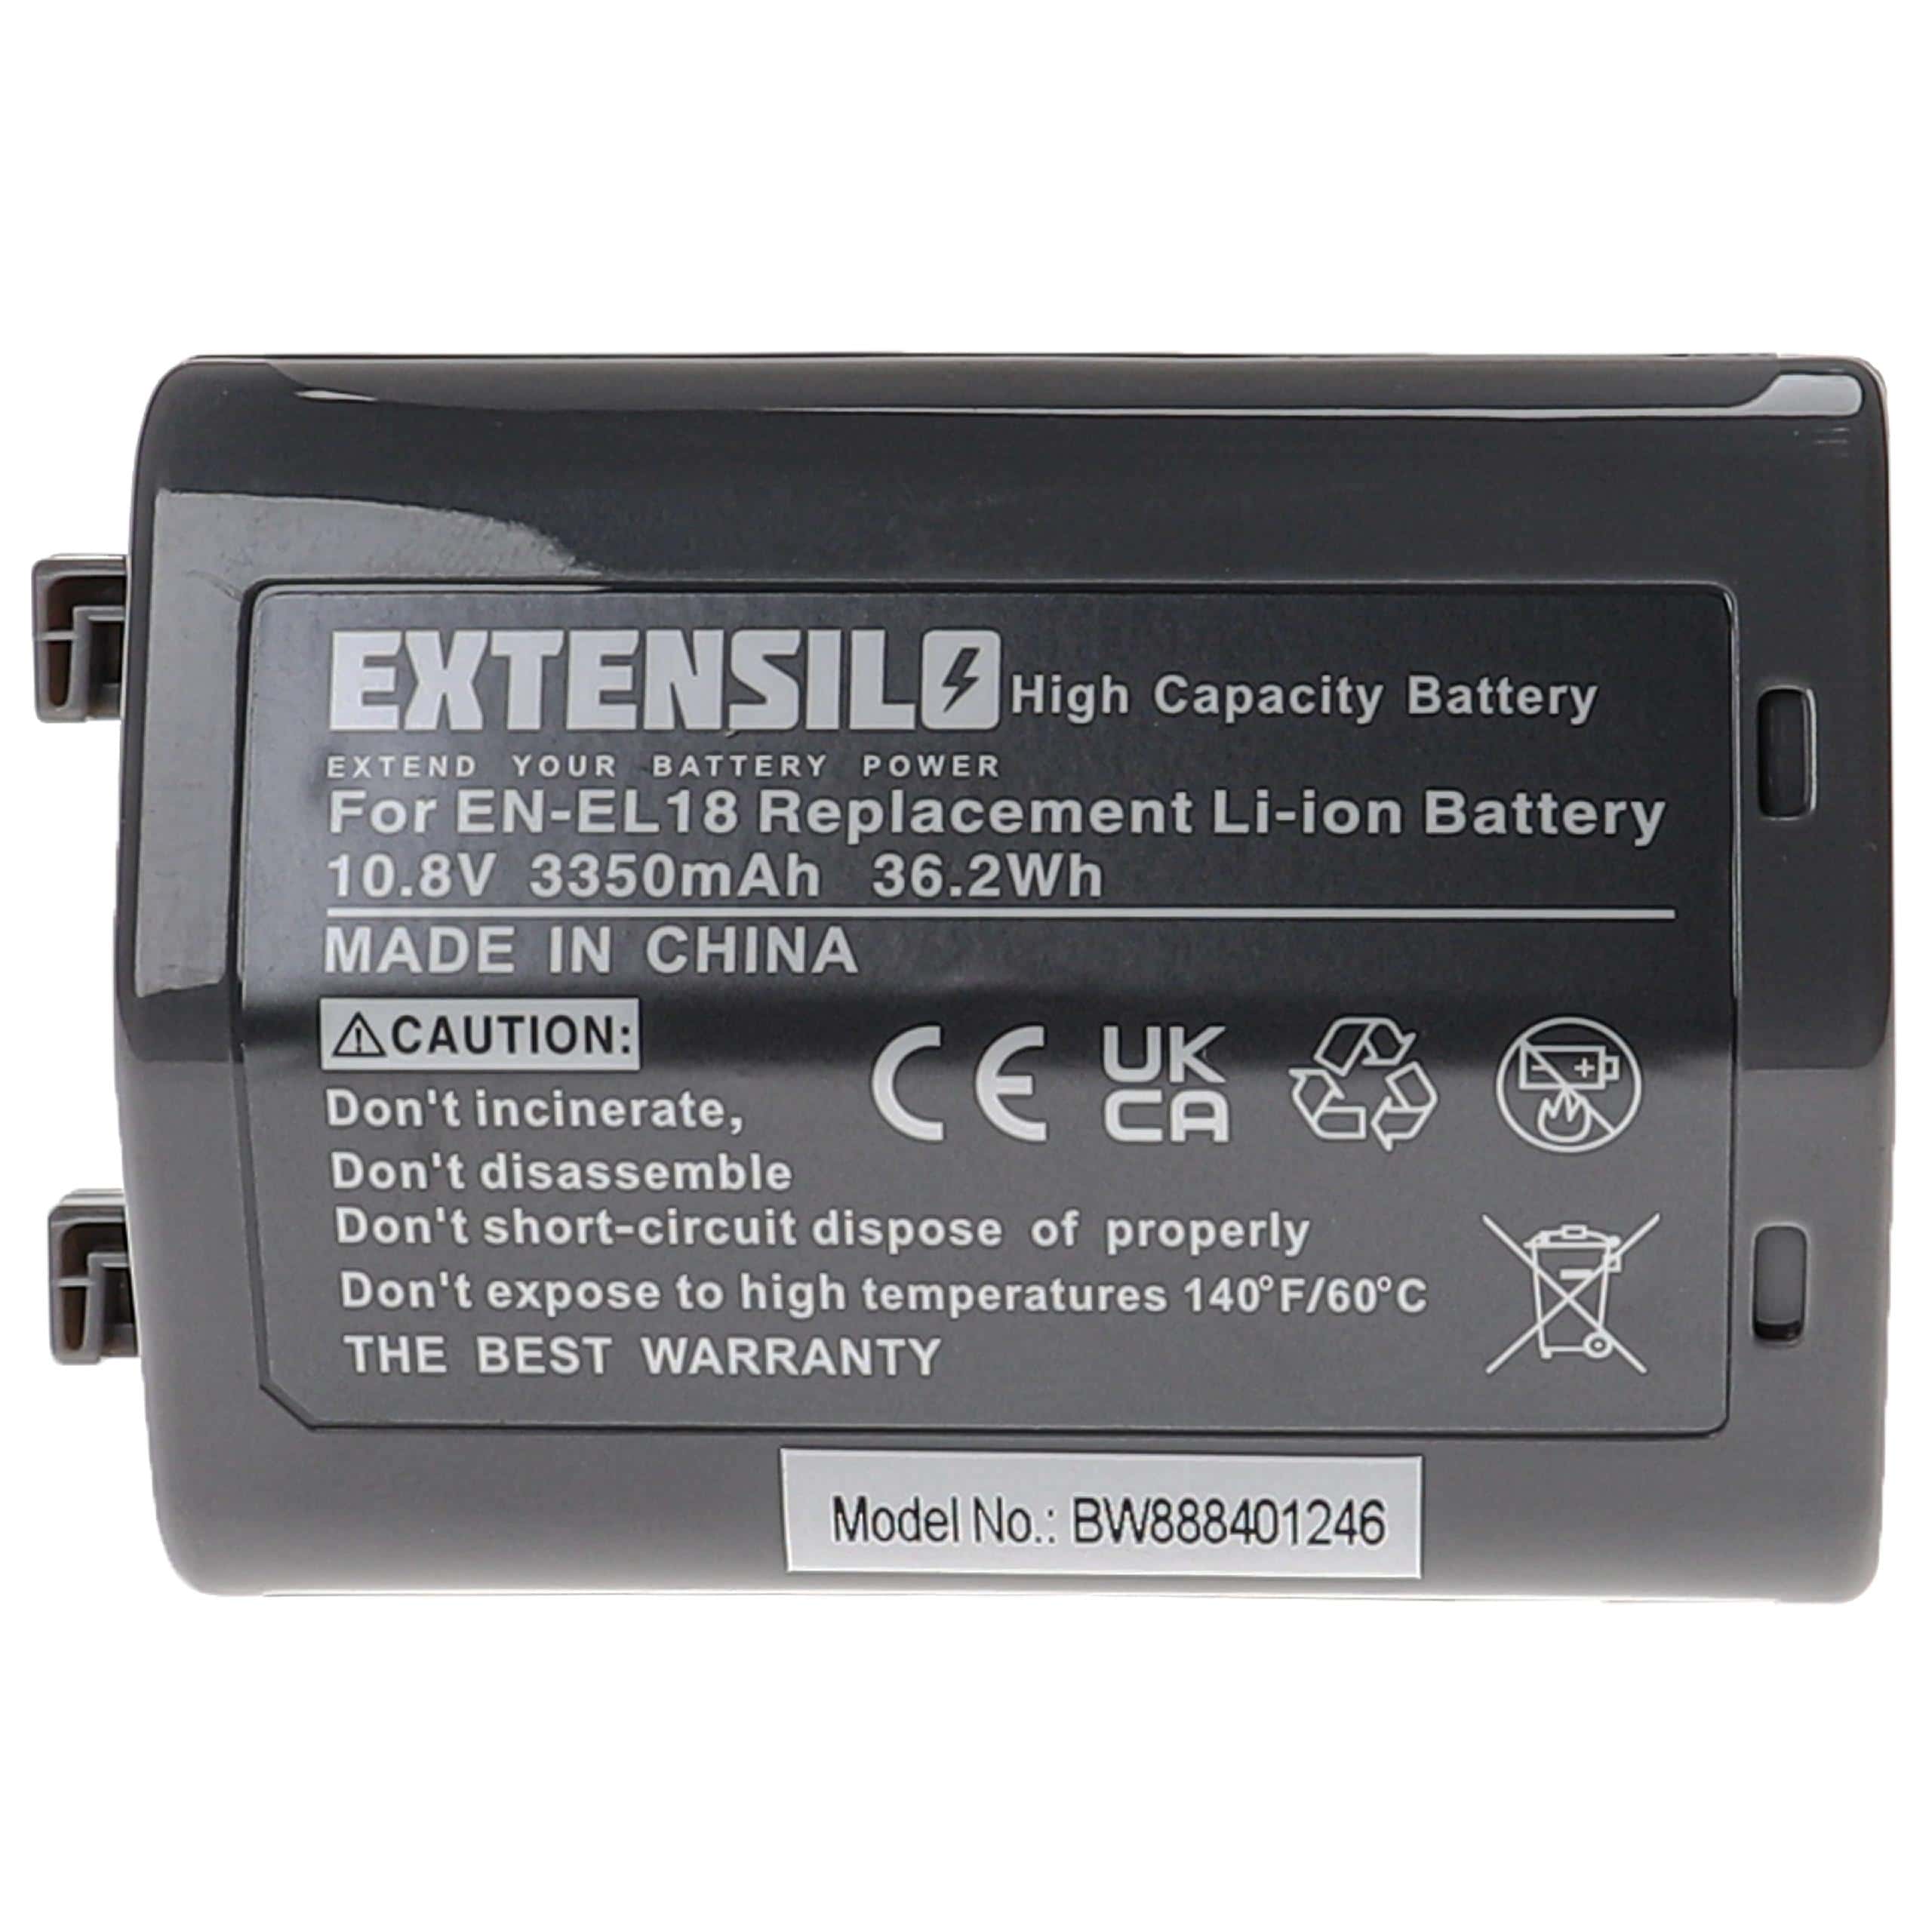 Battery Replacement for Nikon EN-EL18 - 3350mAh, 10.8V, Li-Ion